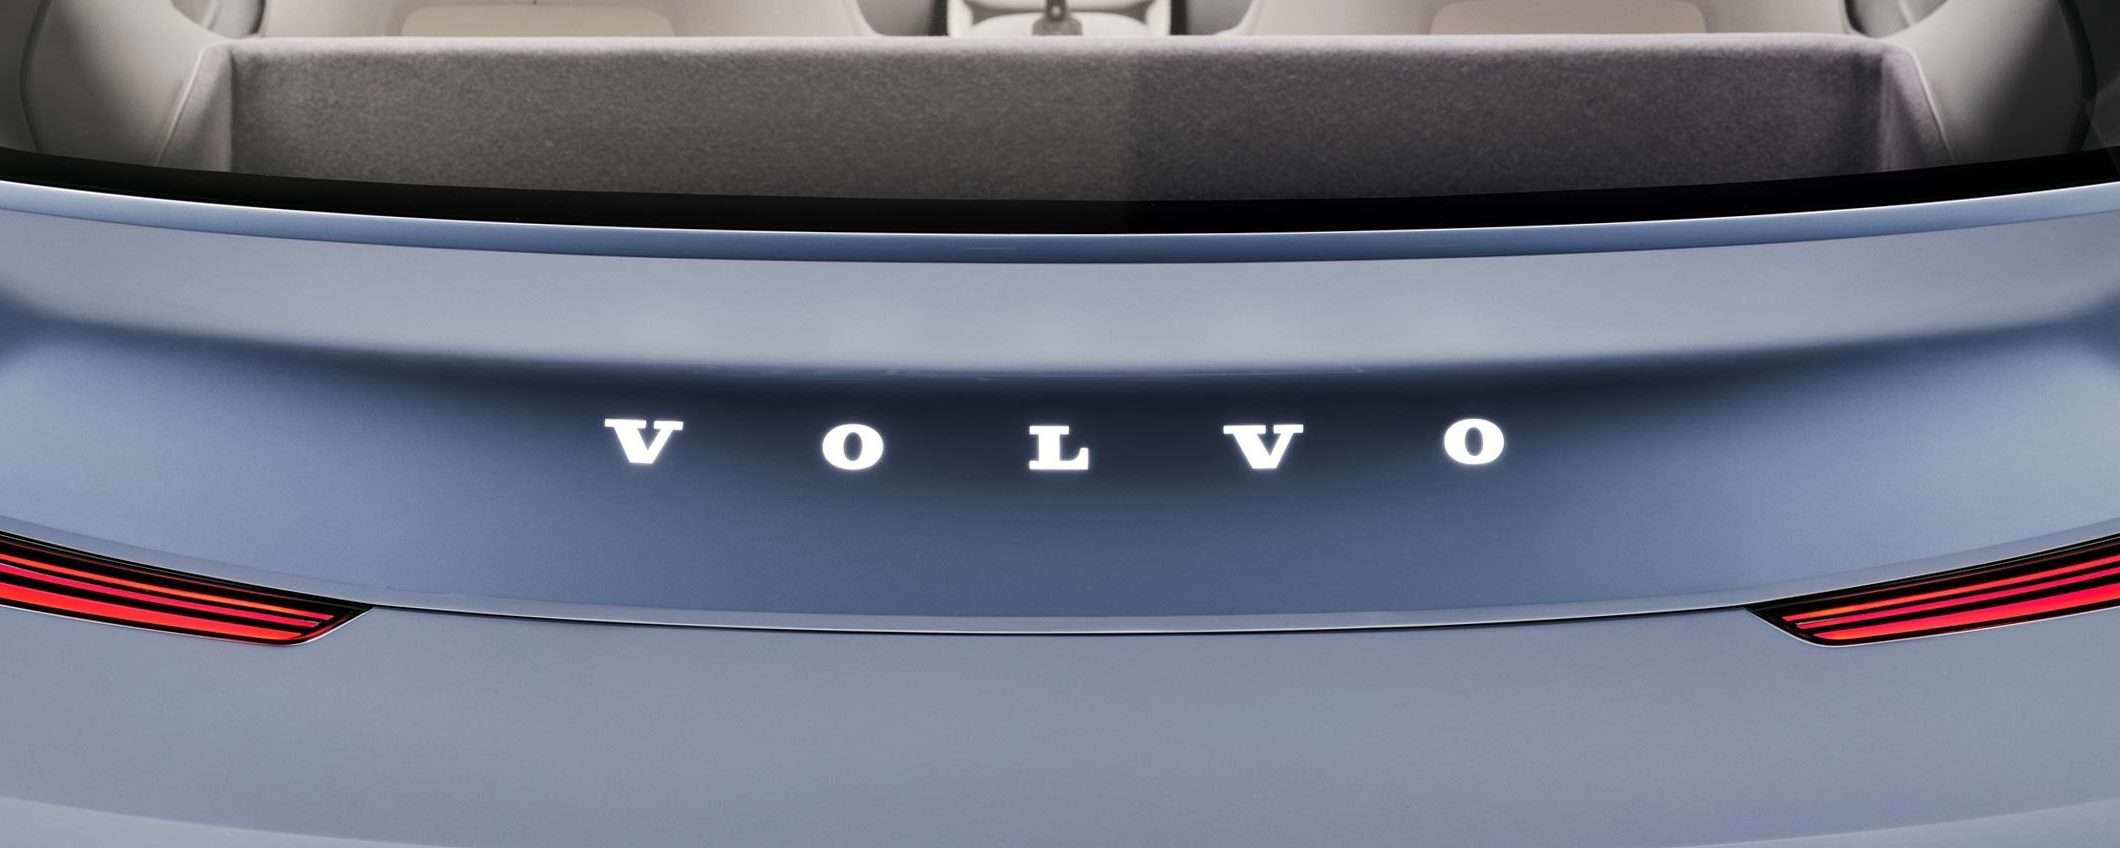 Volvo conferma il furto dati:, rubati documenti R&D